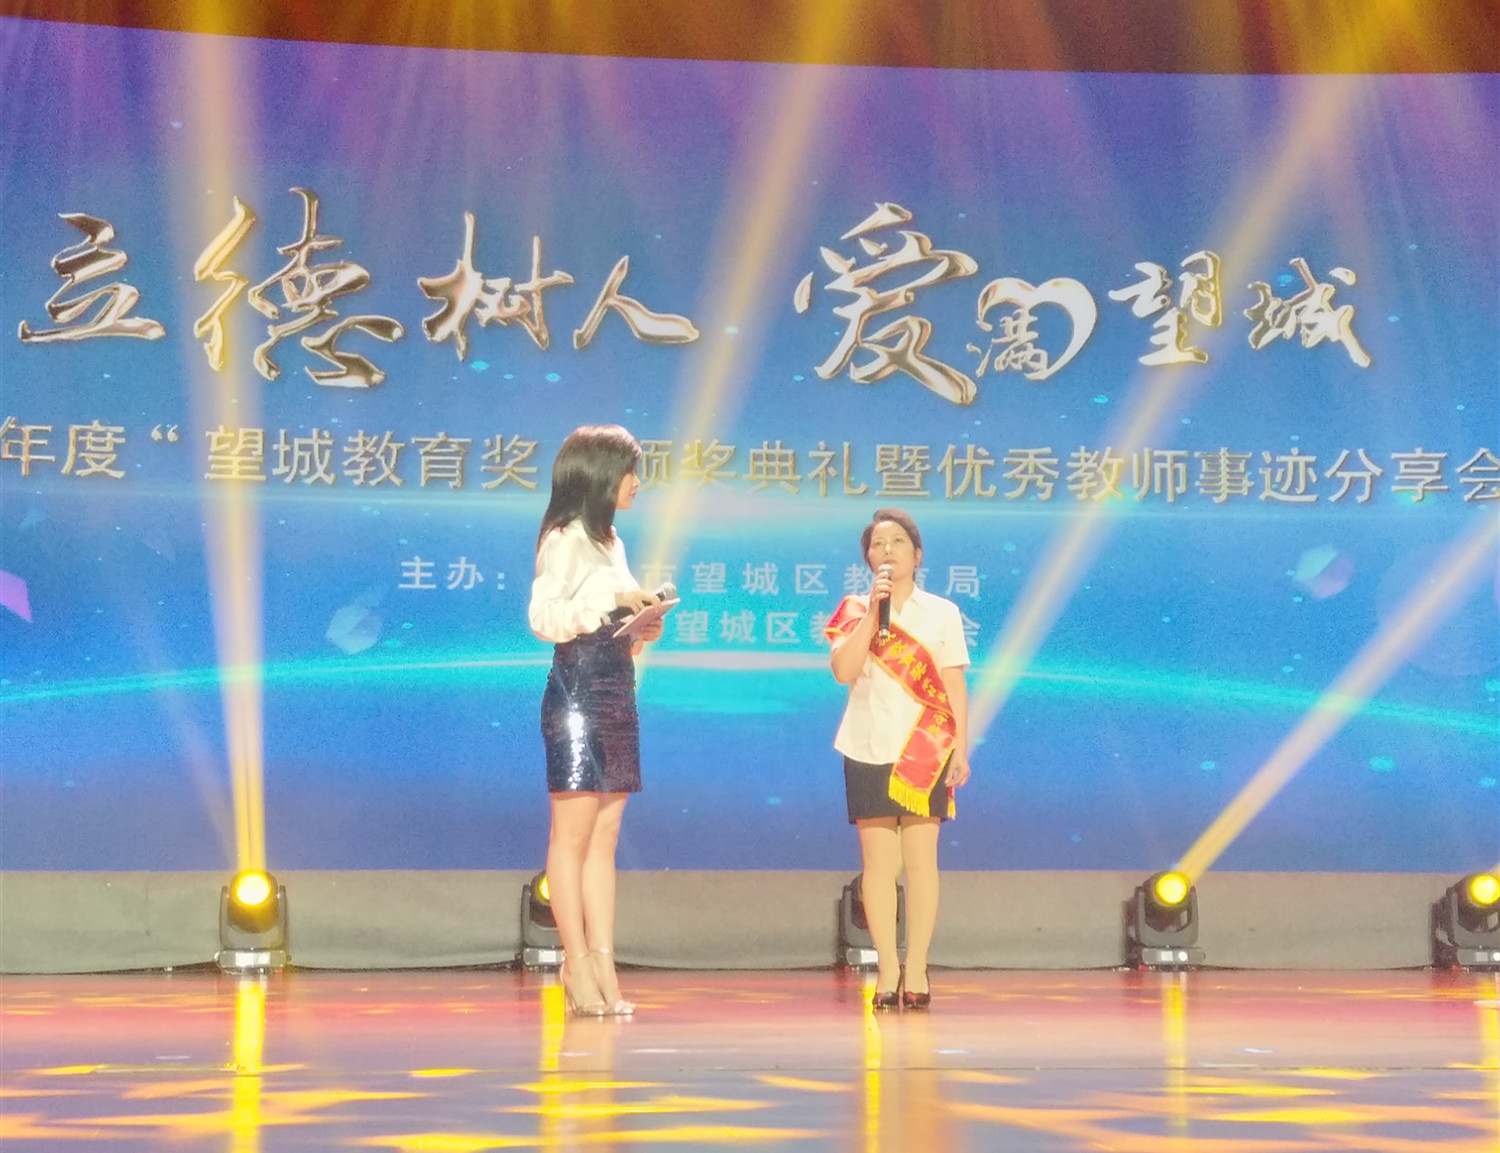 坚守村小23年的邹兰平老师获得“农村教育坚守奖”。